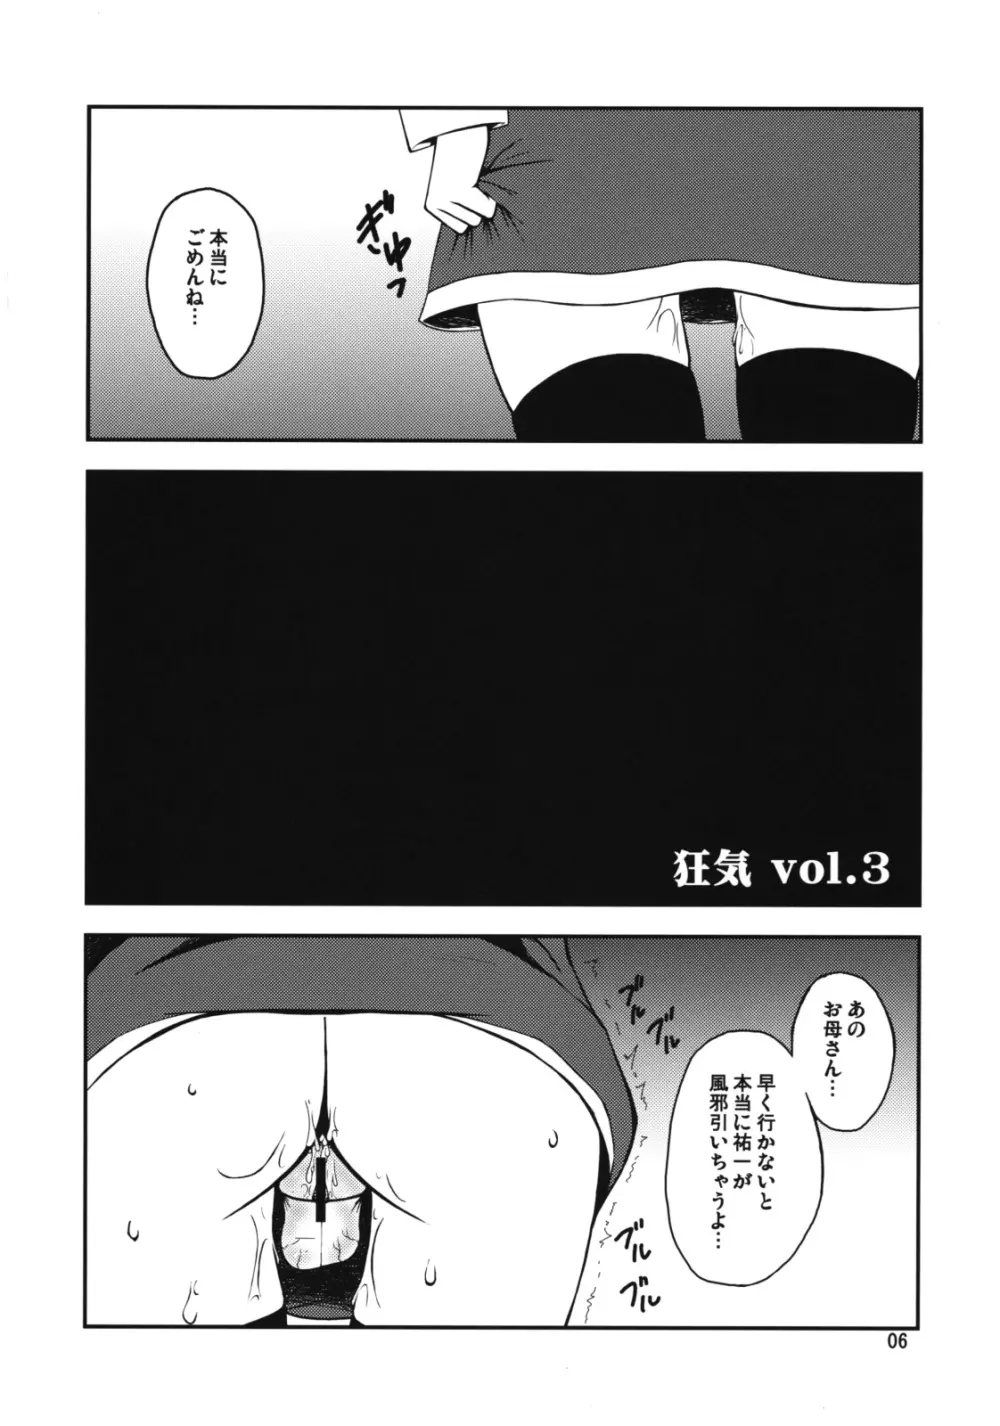 狂気 Vol.3～5 Remake Ver. 5ページ